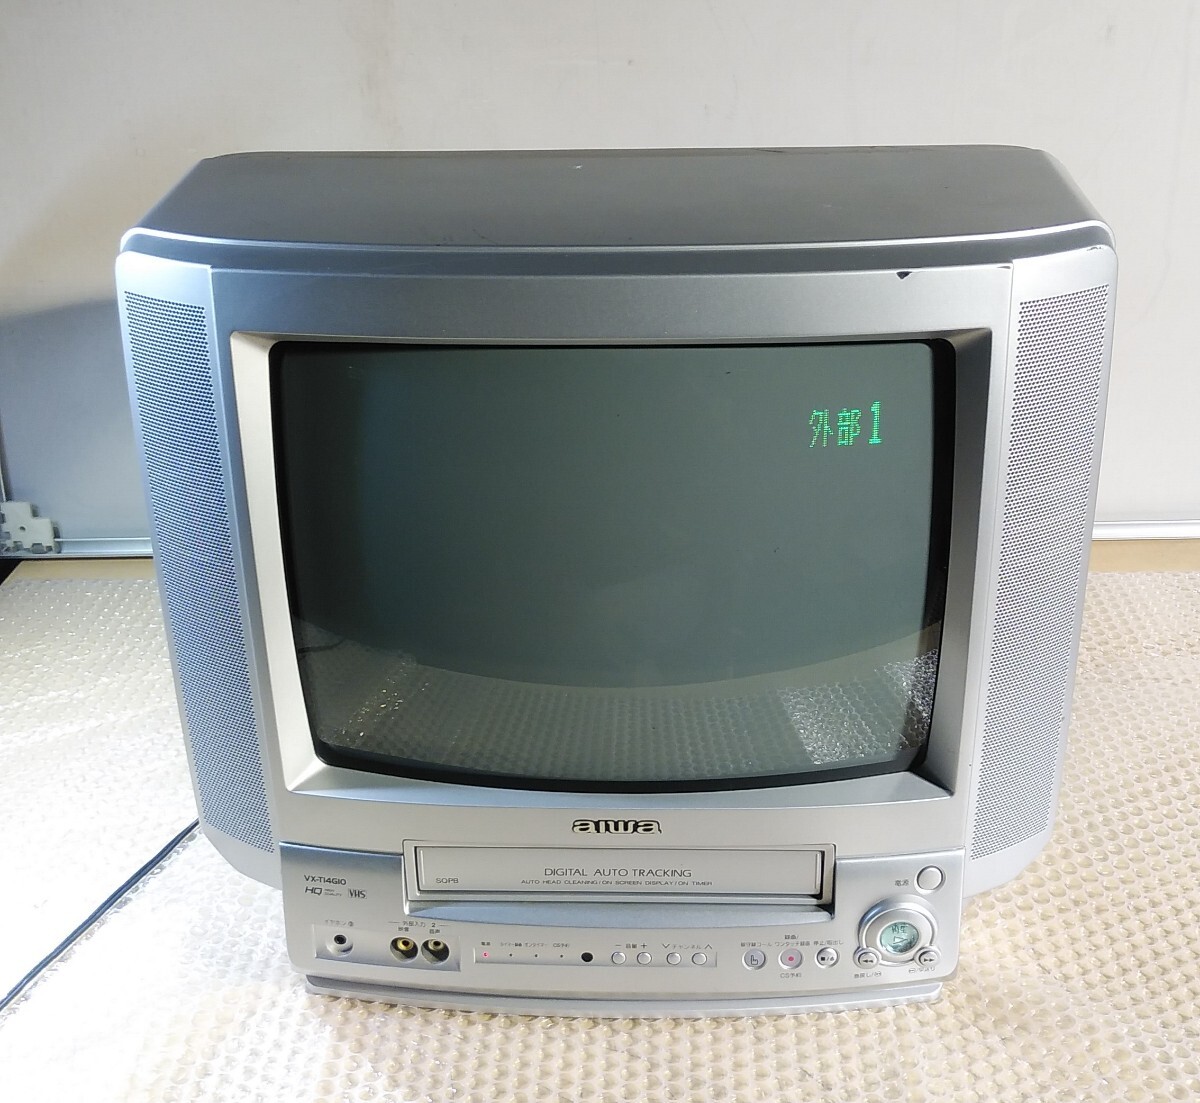 【 включение питания   проверка 】2001 год выпуска   AIWA  AIWA 14 модель  ... видео  　VX-T14G10  коричневый  труба   TV   цвет  TV 